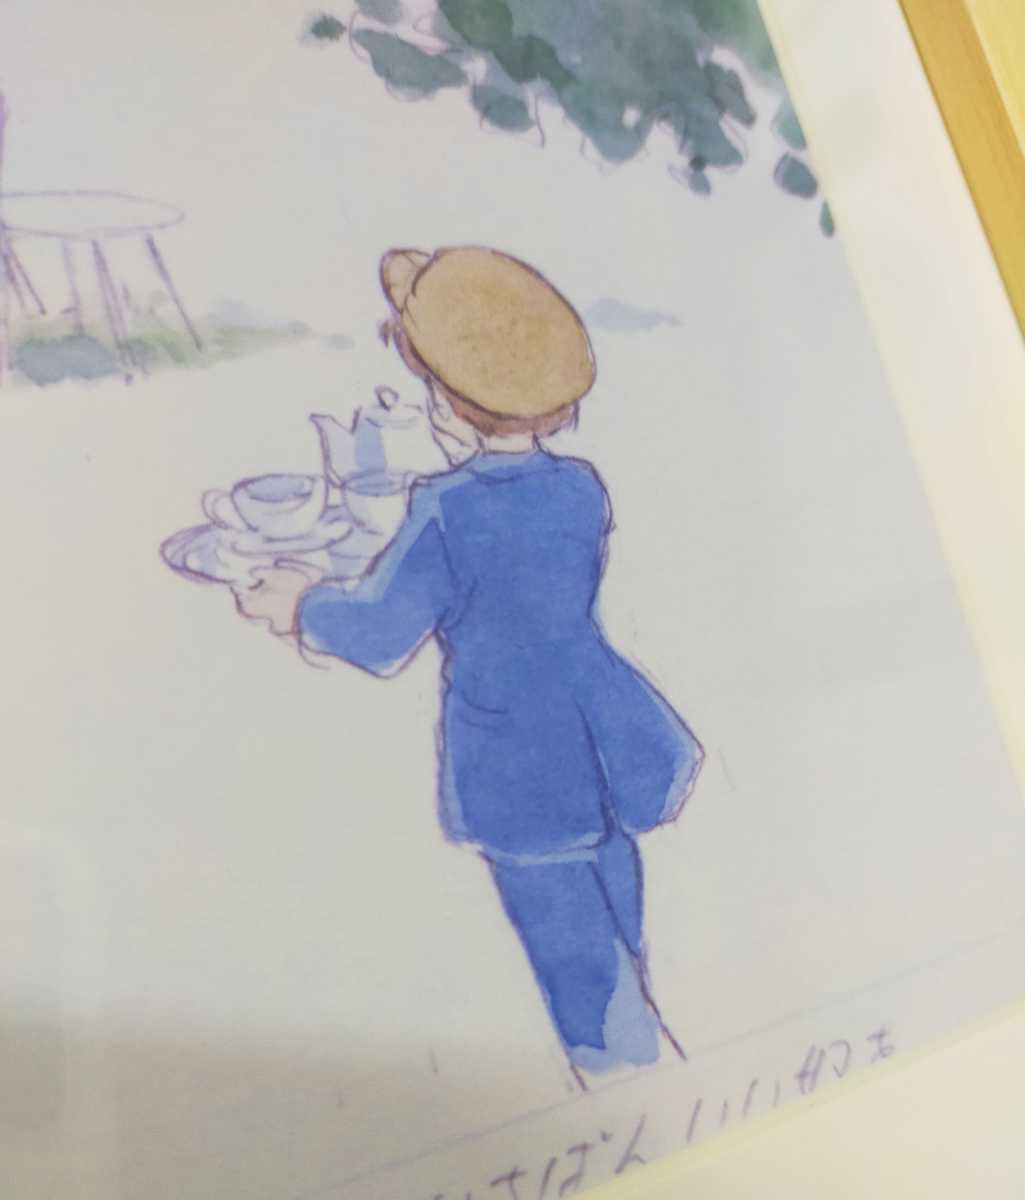 Vor 39 Jahren [Nicht zu verkaufen] Studio Ghibli Hayao Miyazaki An meine Schwester Standbild Material für die Vertonung Gerahmtes Objekt 1982 Animage Postkarte Originalbild GHIBLI, Comics, Anime-Waren, Andere